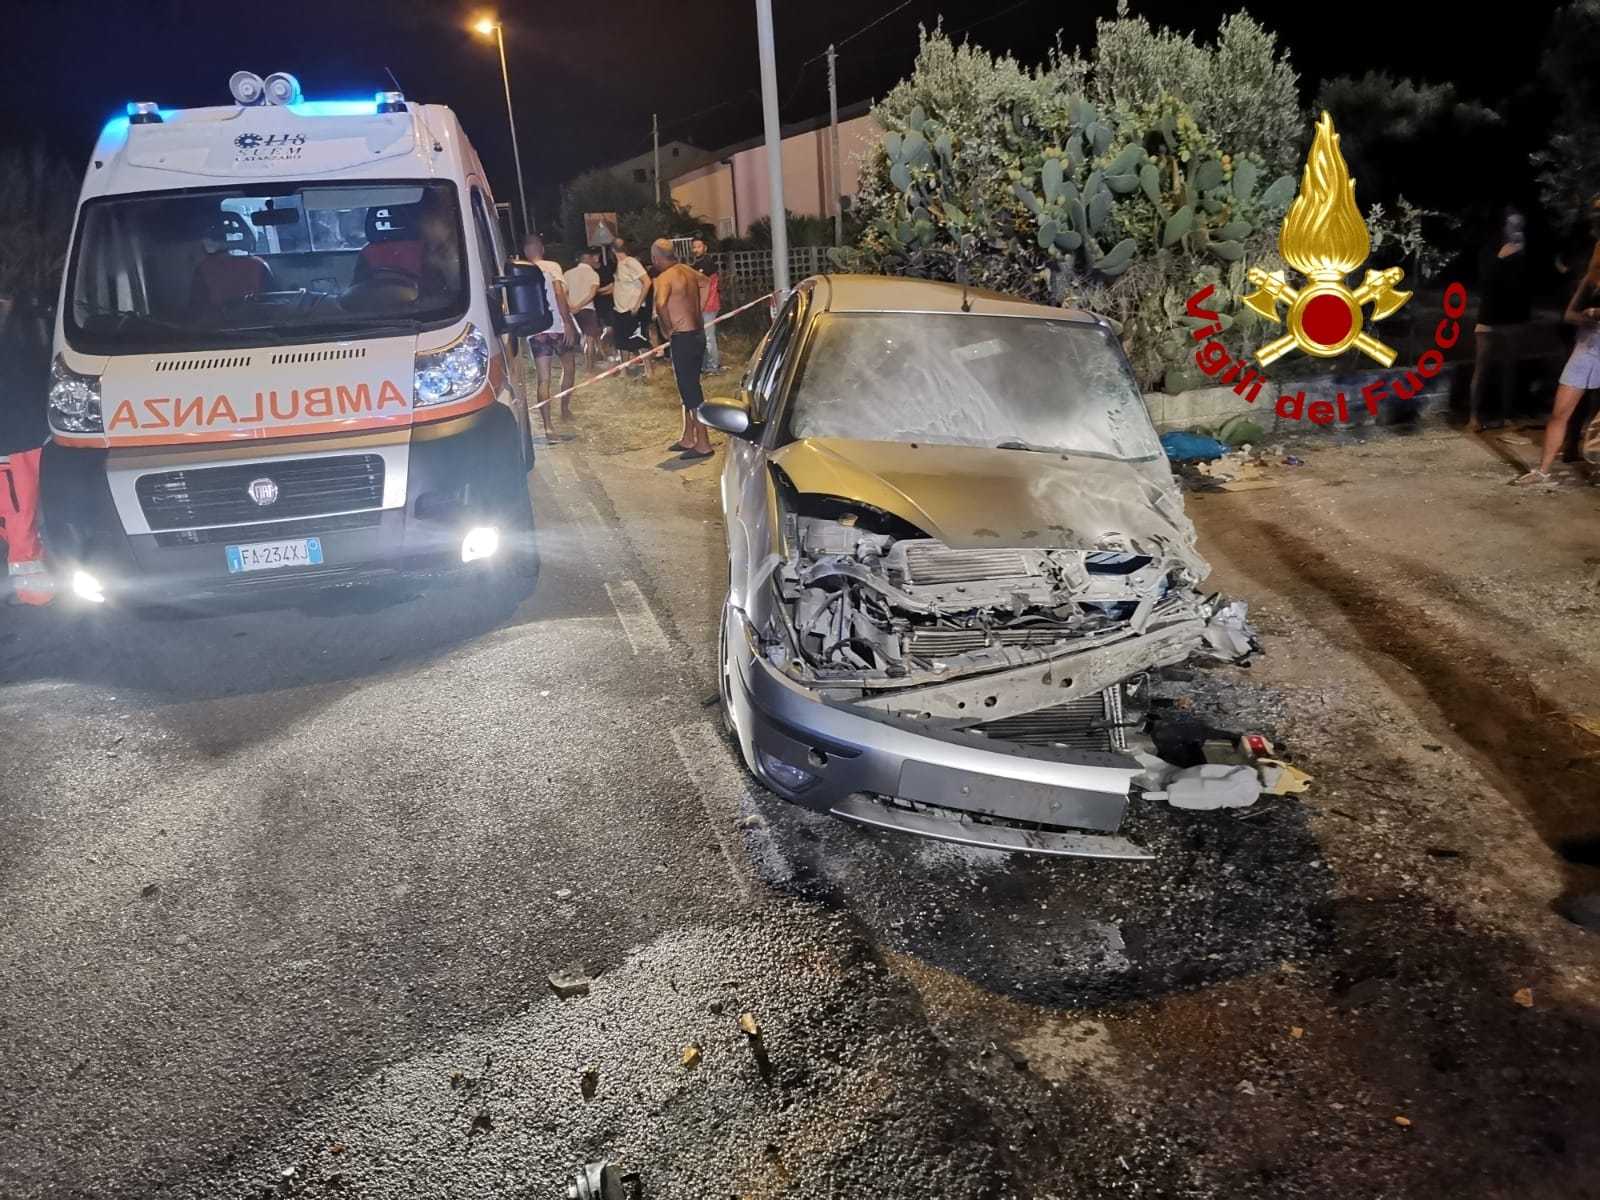 Incidenti stradali: Gizzeria. Un frontale con incendio auto, bilancio 4 feriti intervento dei Vvf